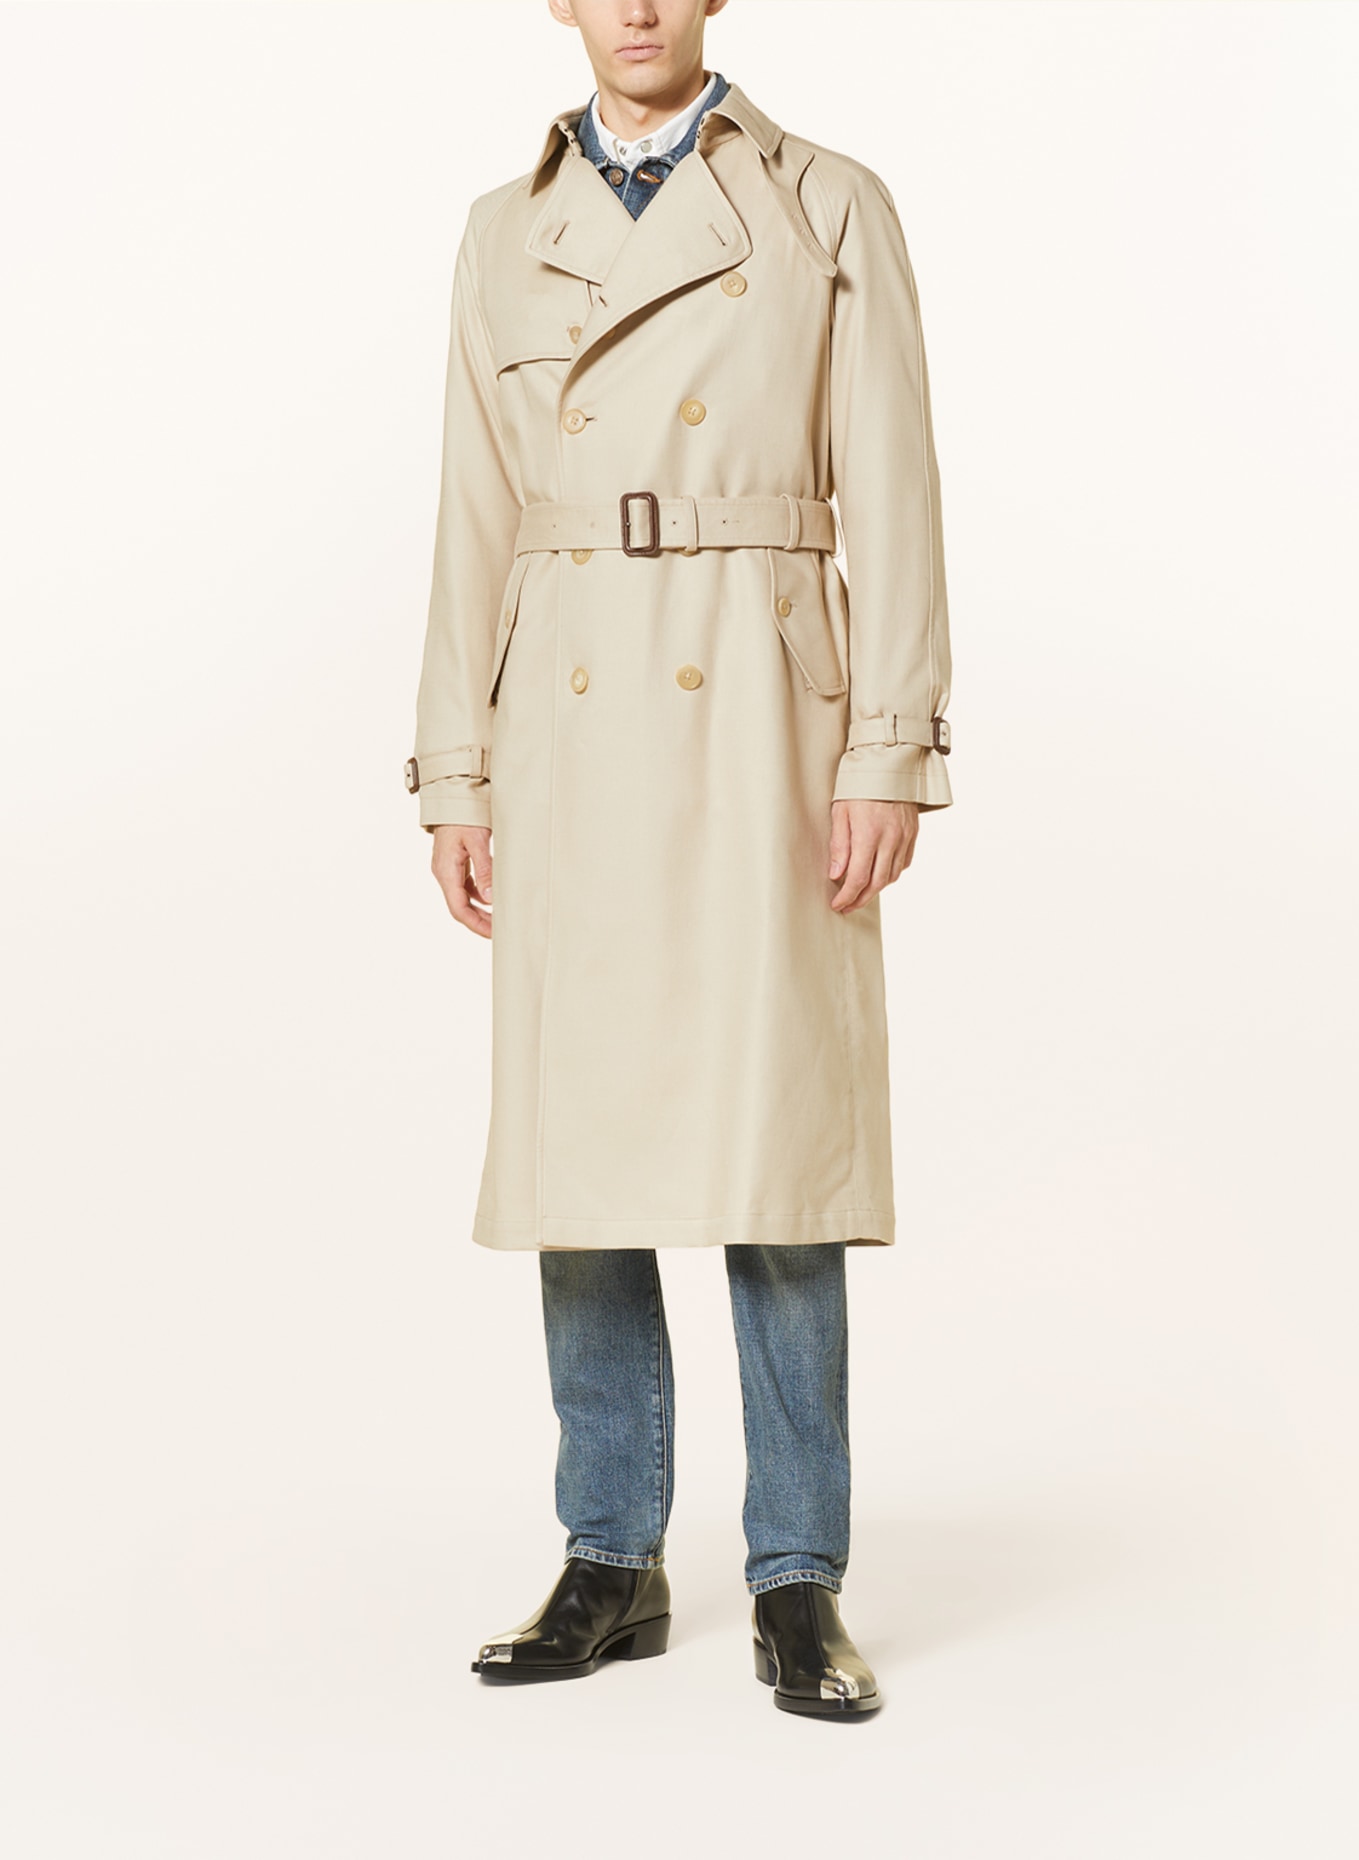 RALPH LAUREN PURPLE LABEL Trench coat, Color: BEIGE (Image 3)